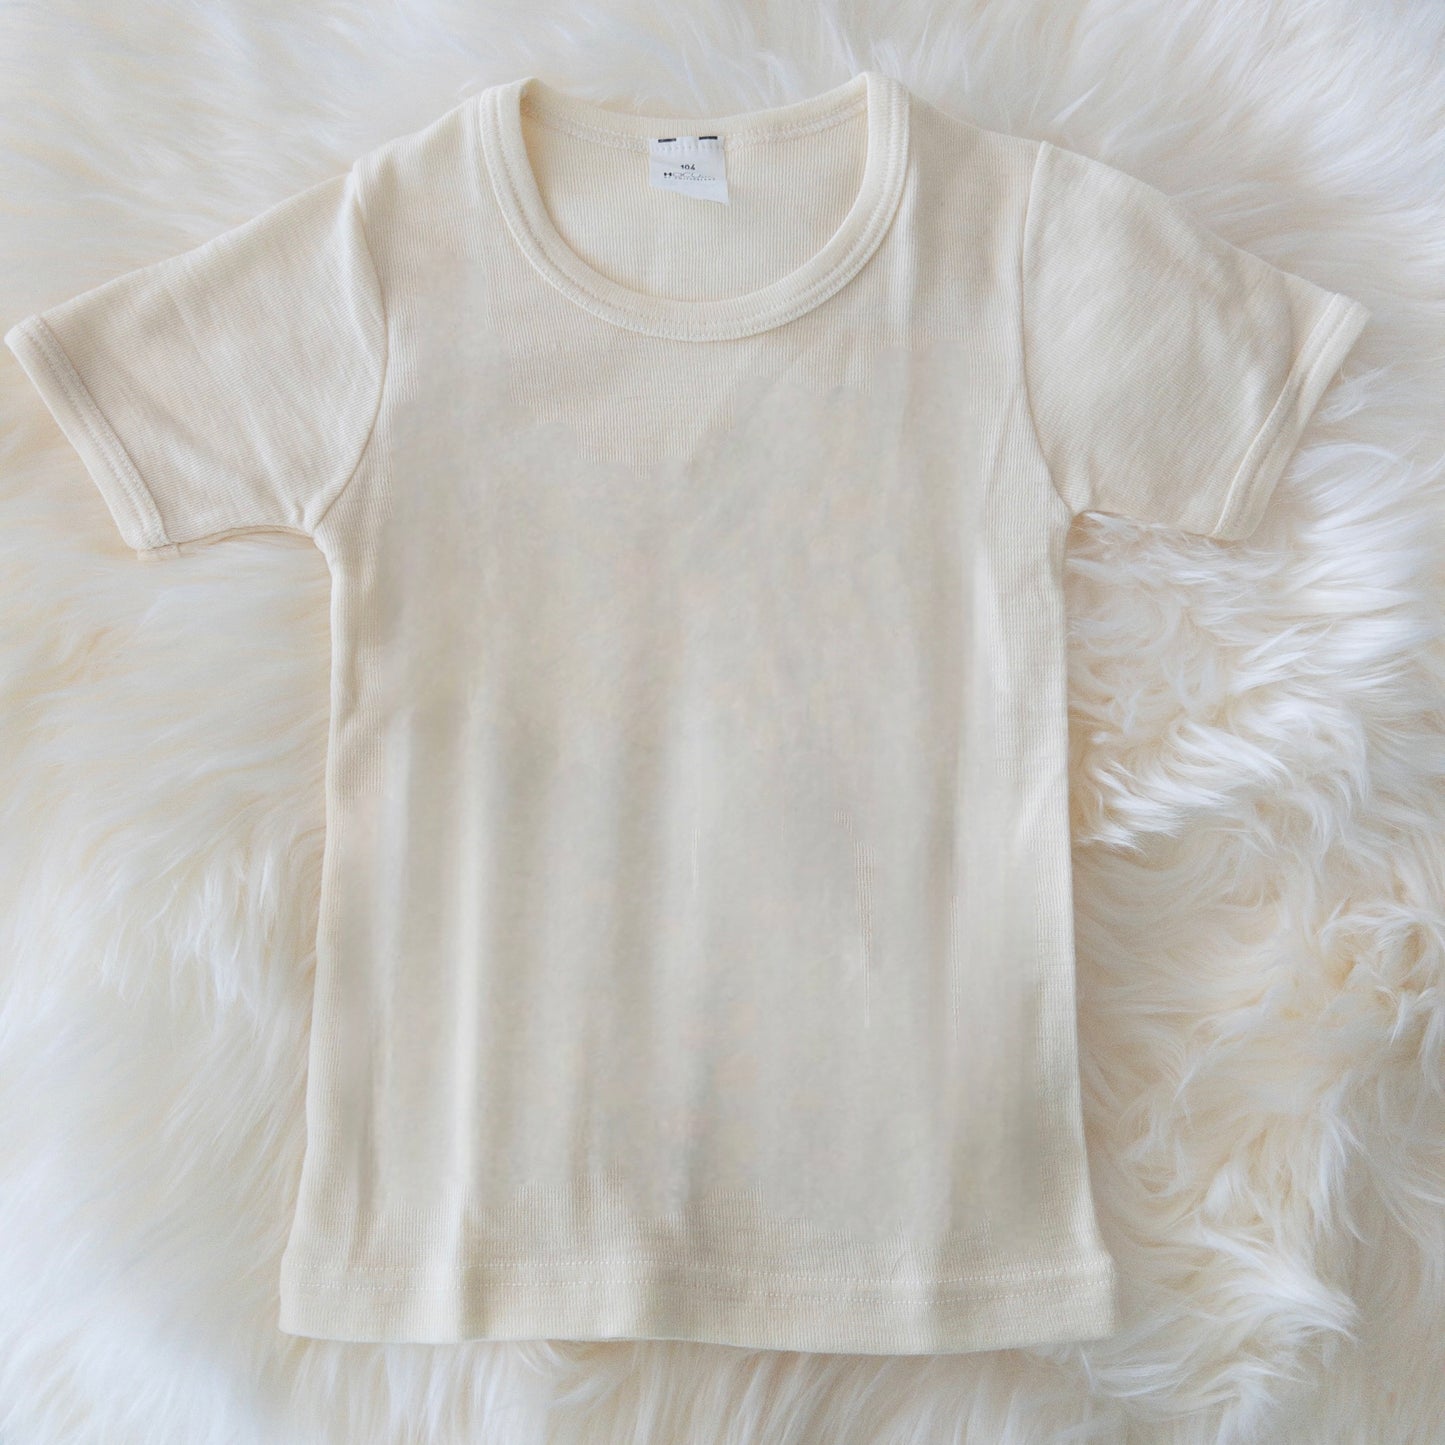 HOCOSA Kids' Organic Wool/Silk Undershirt with Short Sleeves - NATURAL WHITE